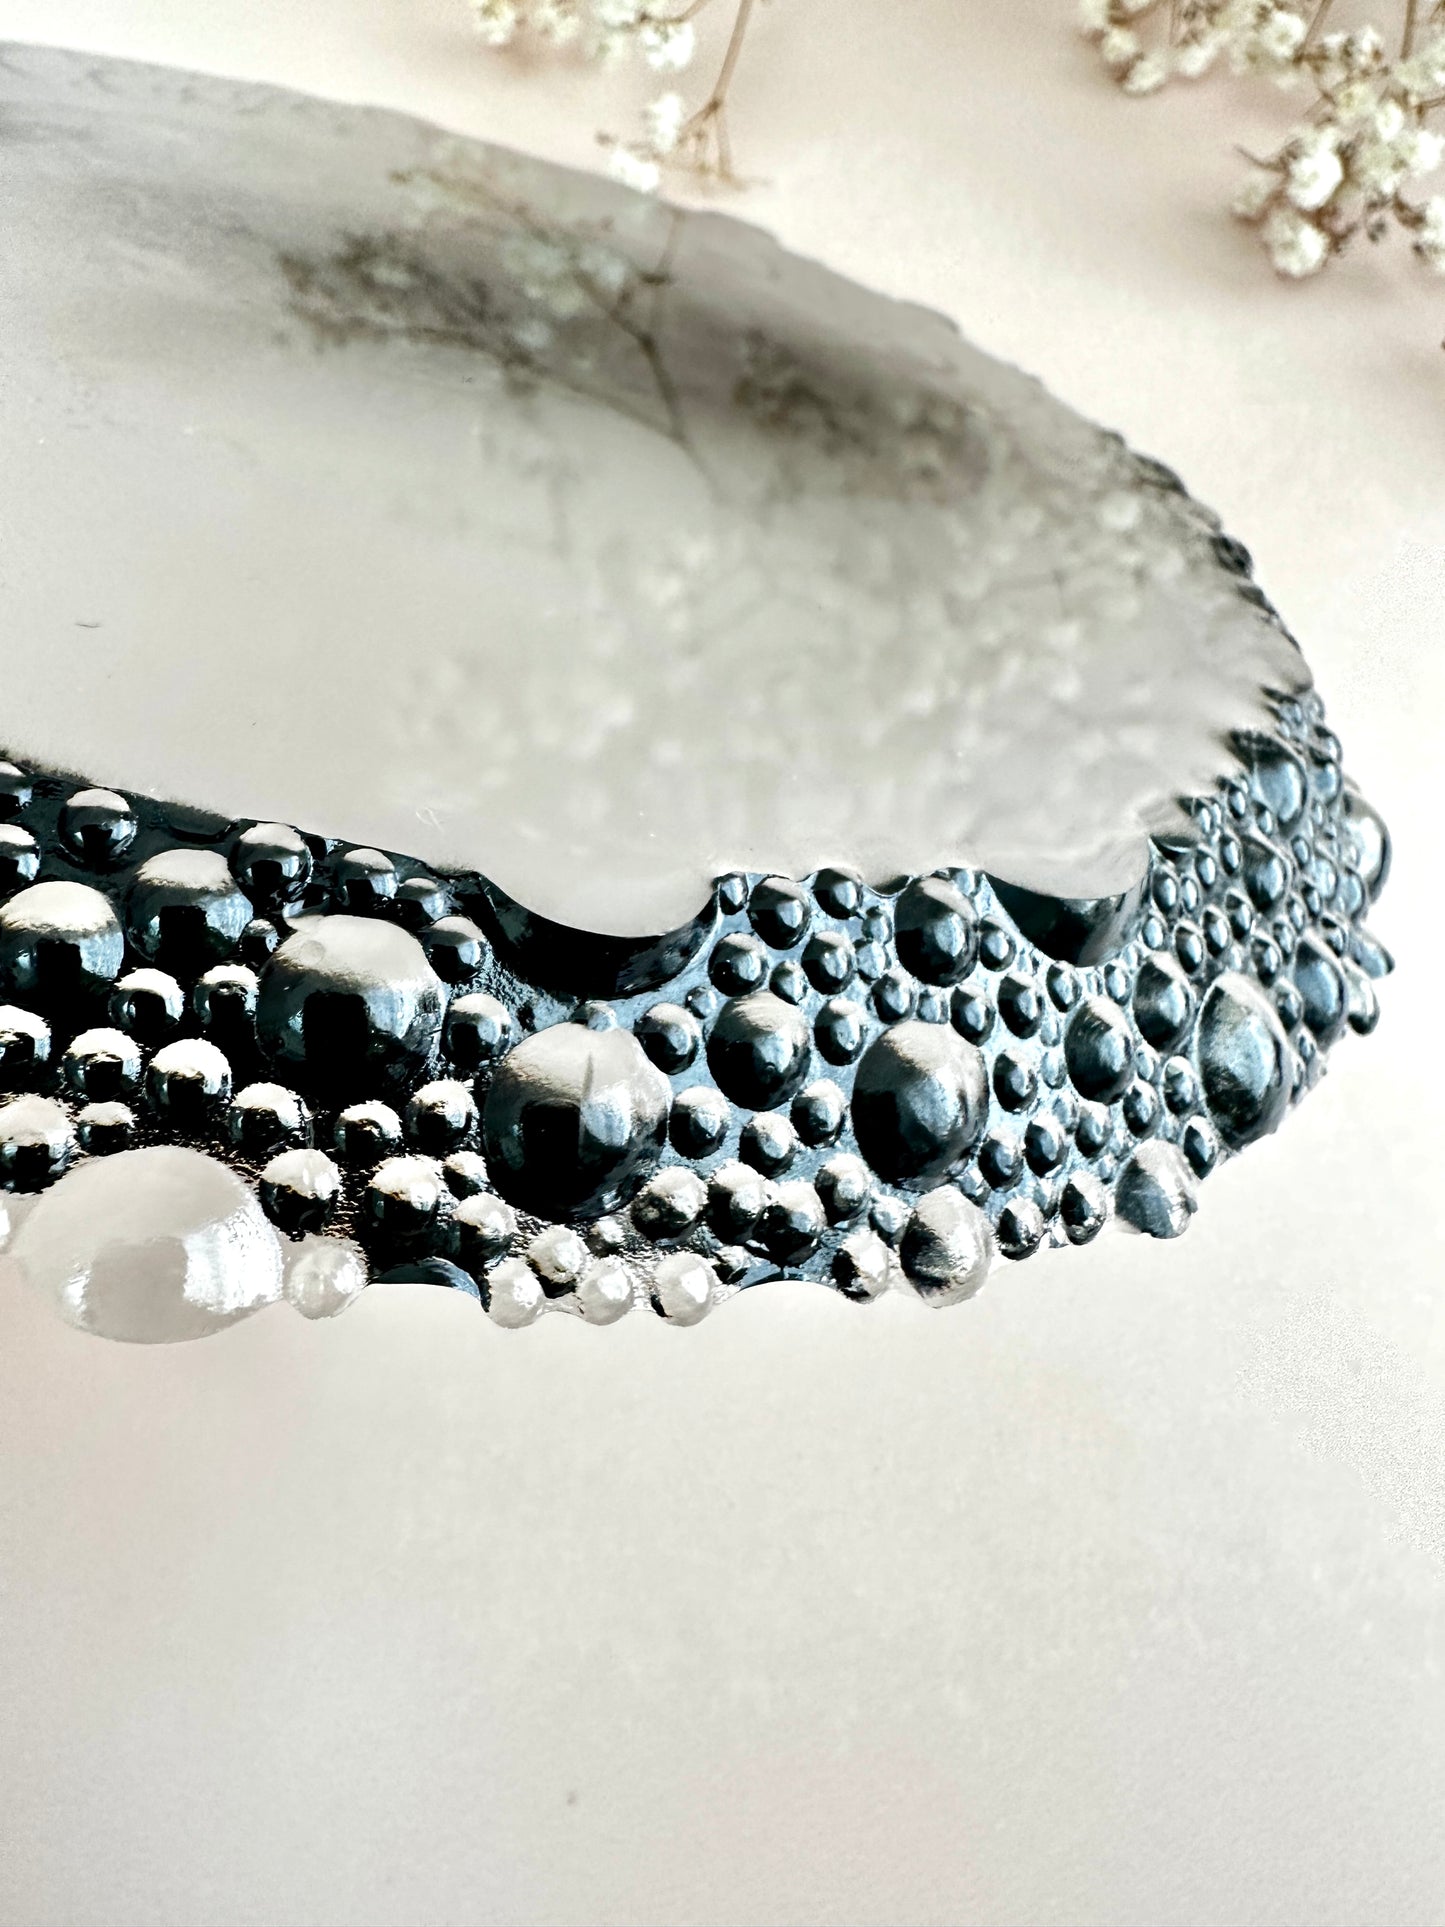 Силиконовая форма с пузырьковой кромкой: инновационный дизайн для создания изделий идеальной формы